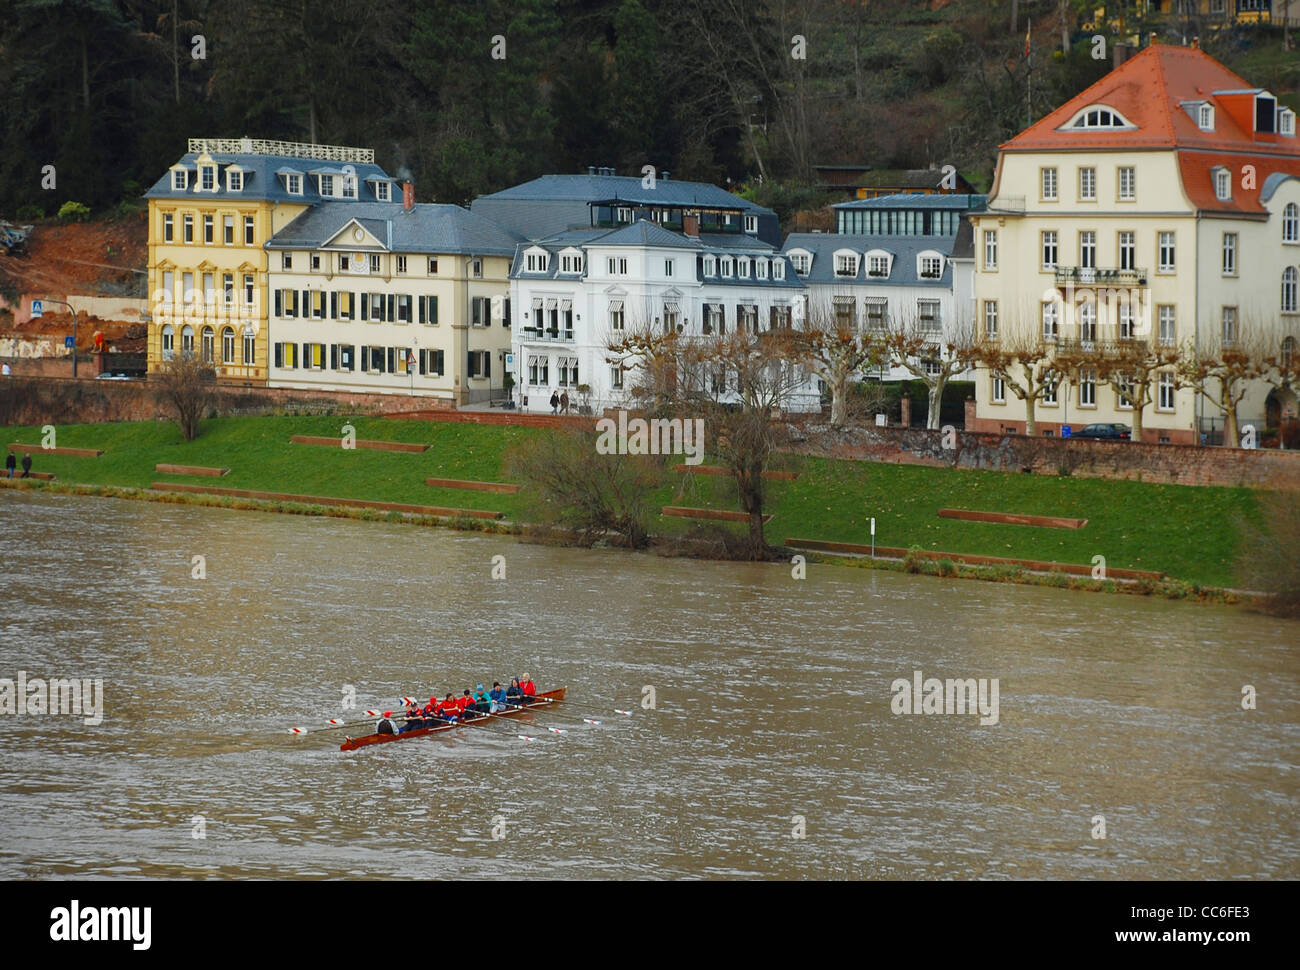 La pratique de l'équipe d'aviron sur la rivière Neckar, Heidelberg, Allemagne Banque D'Images